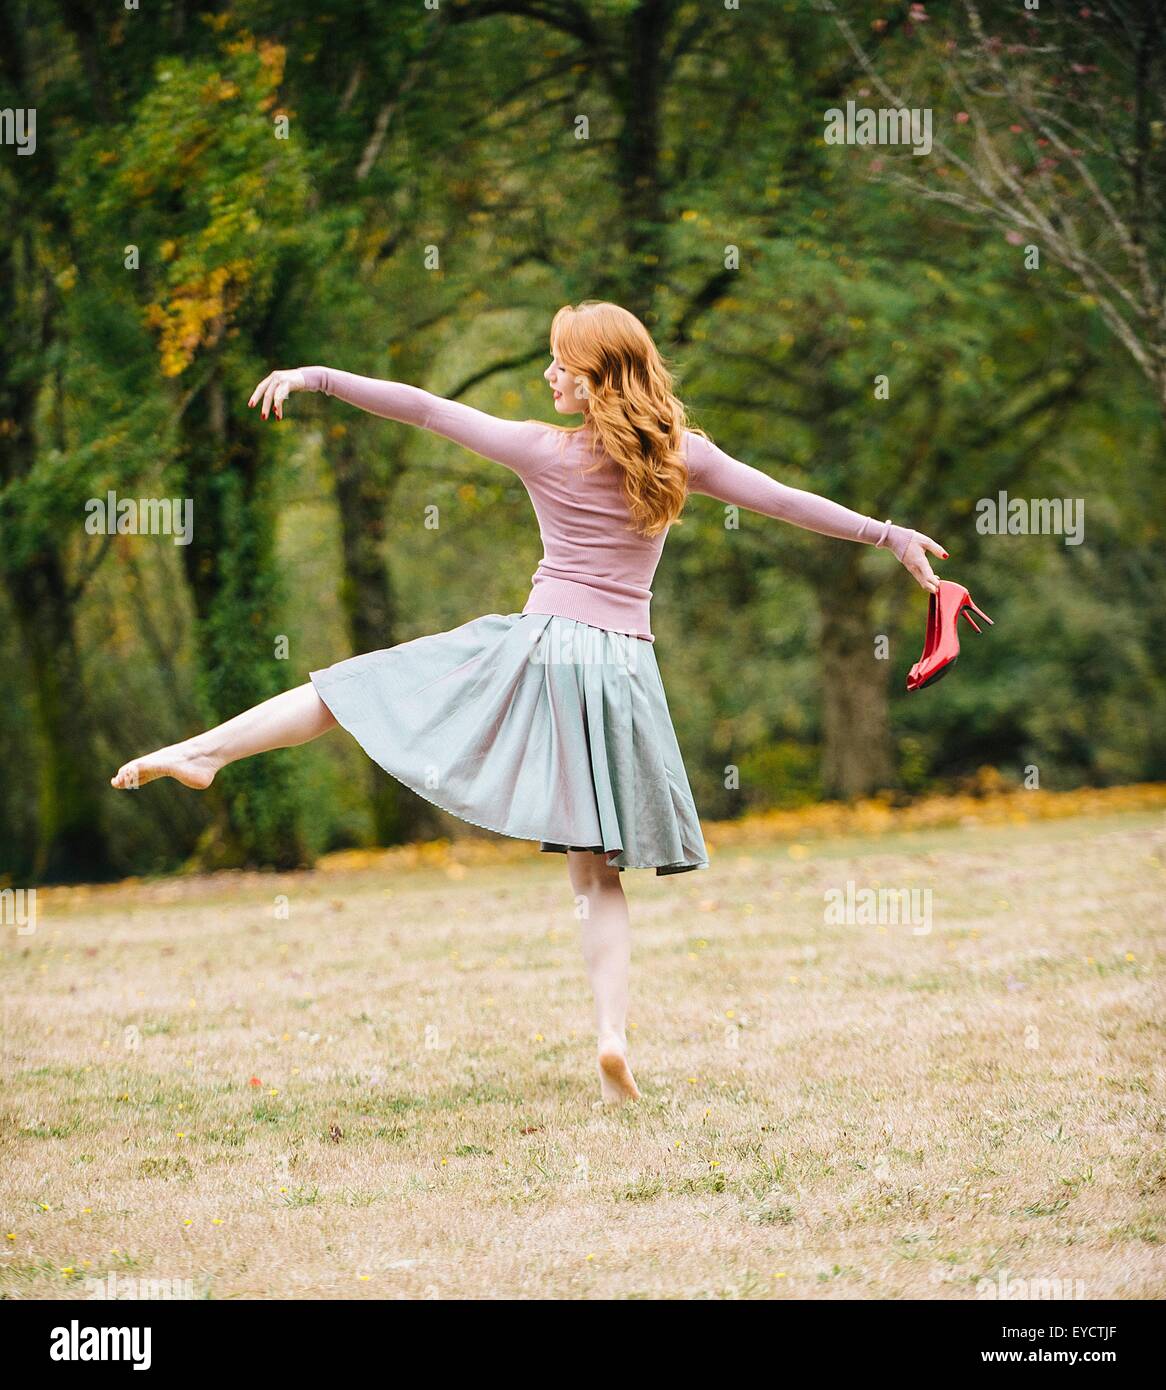 Vue arrière du jeune danseuse prête holding red High heels in park Banque D'Images